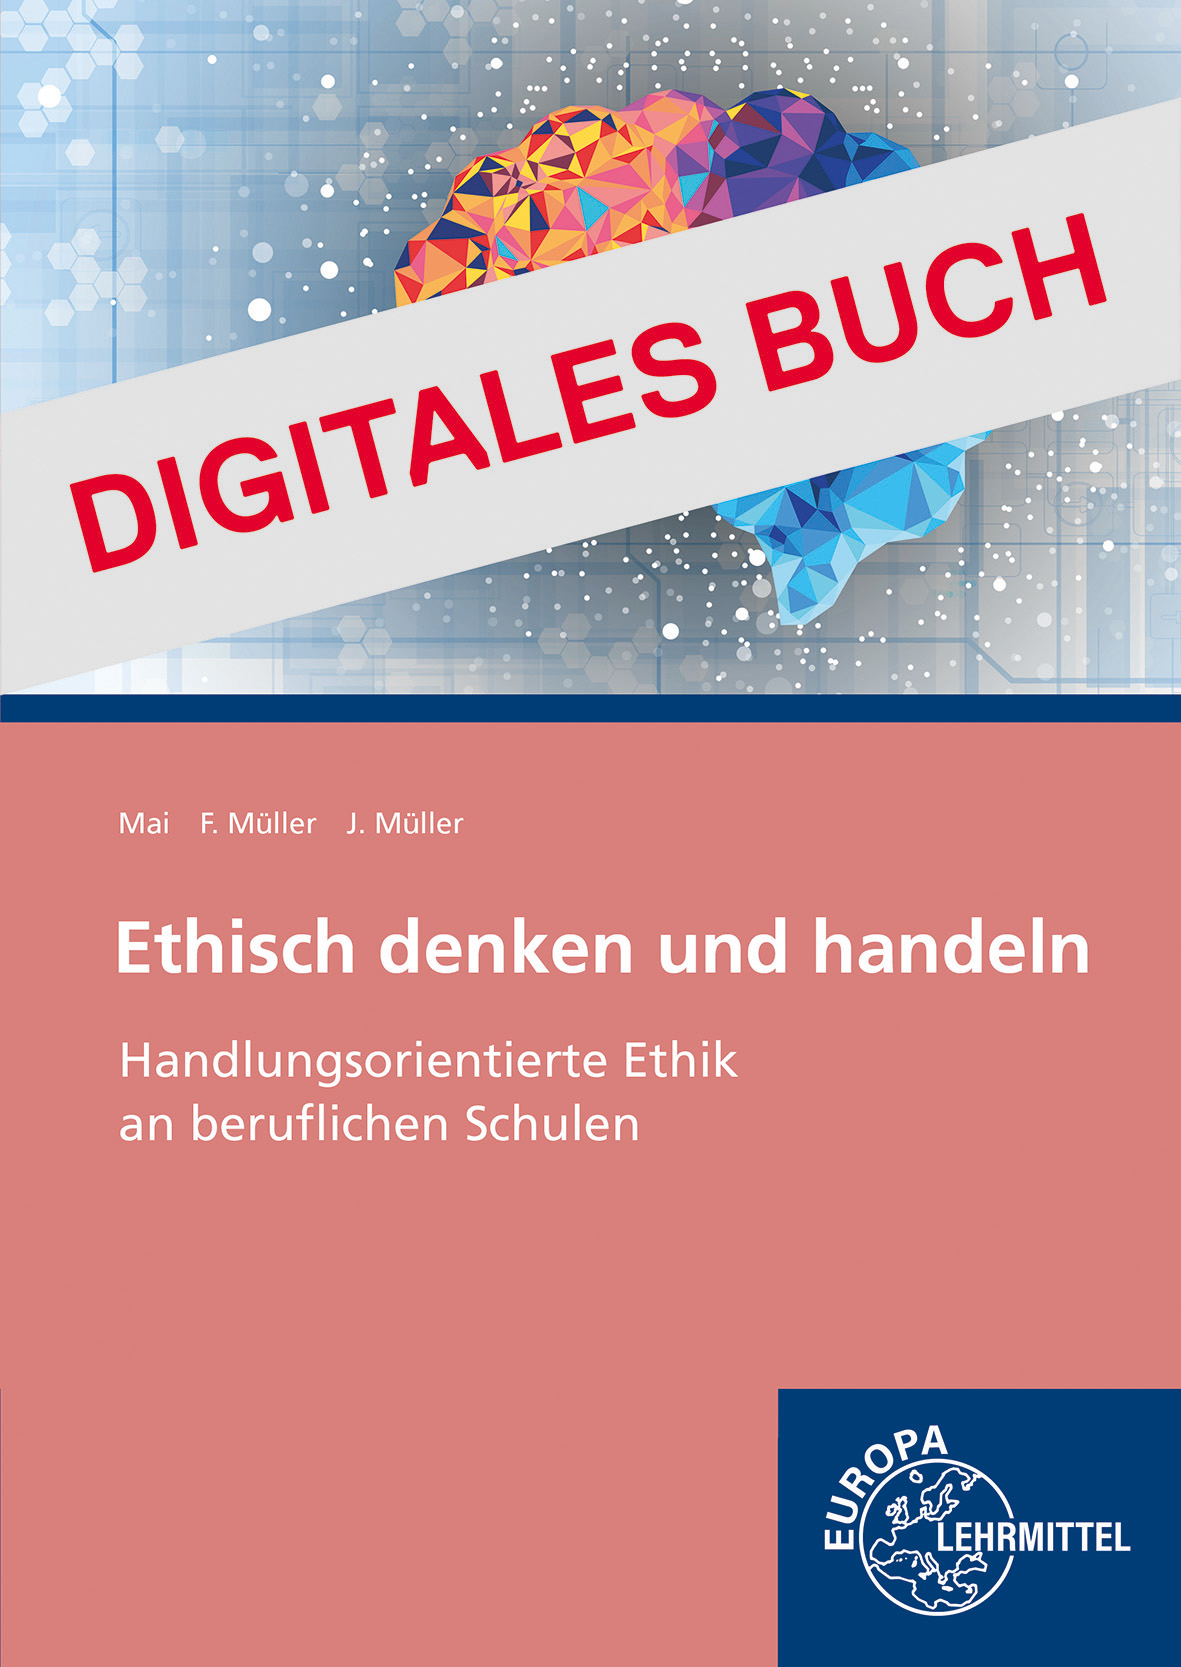 Ethisch denken und handeln - Digitales Buch